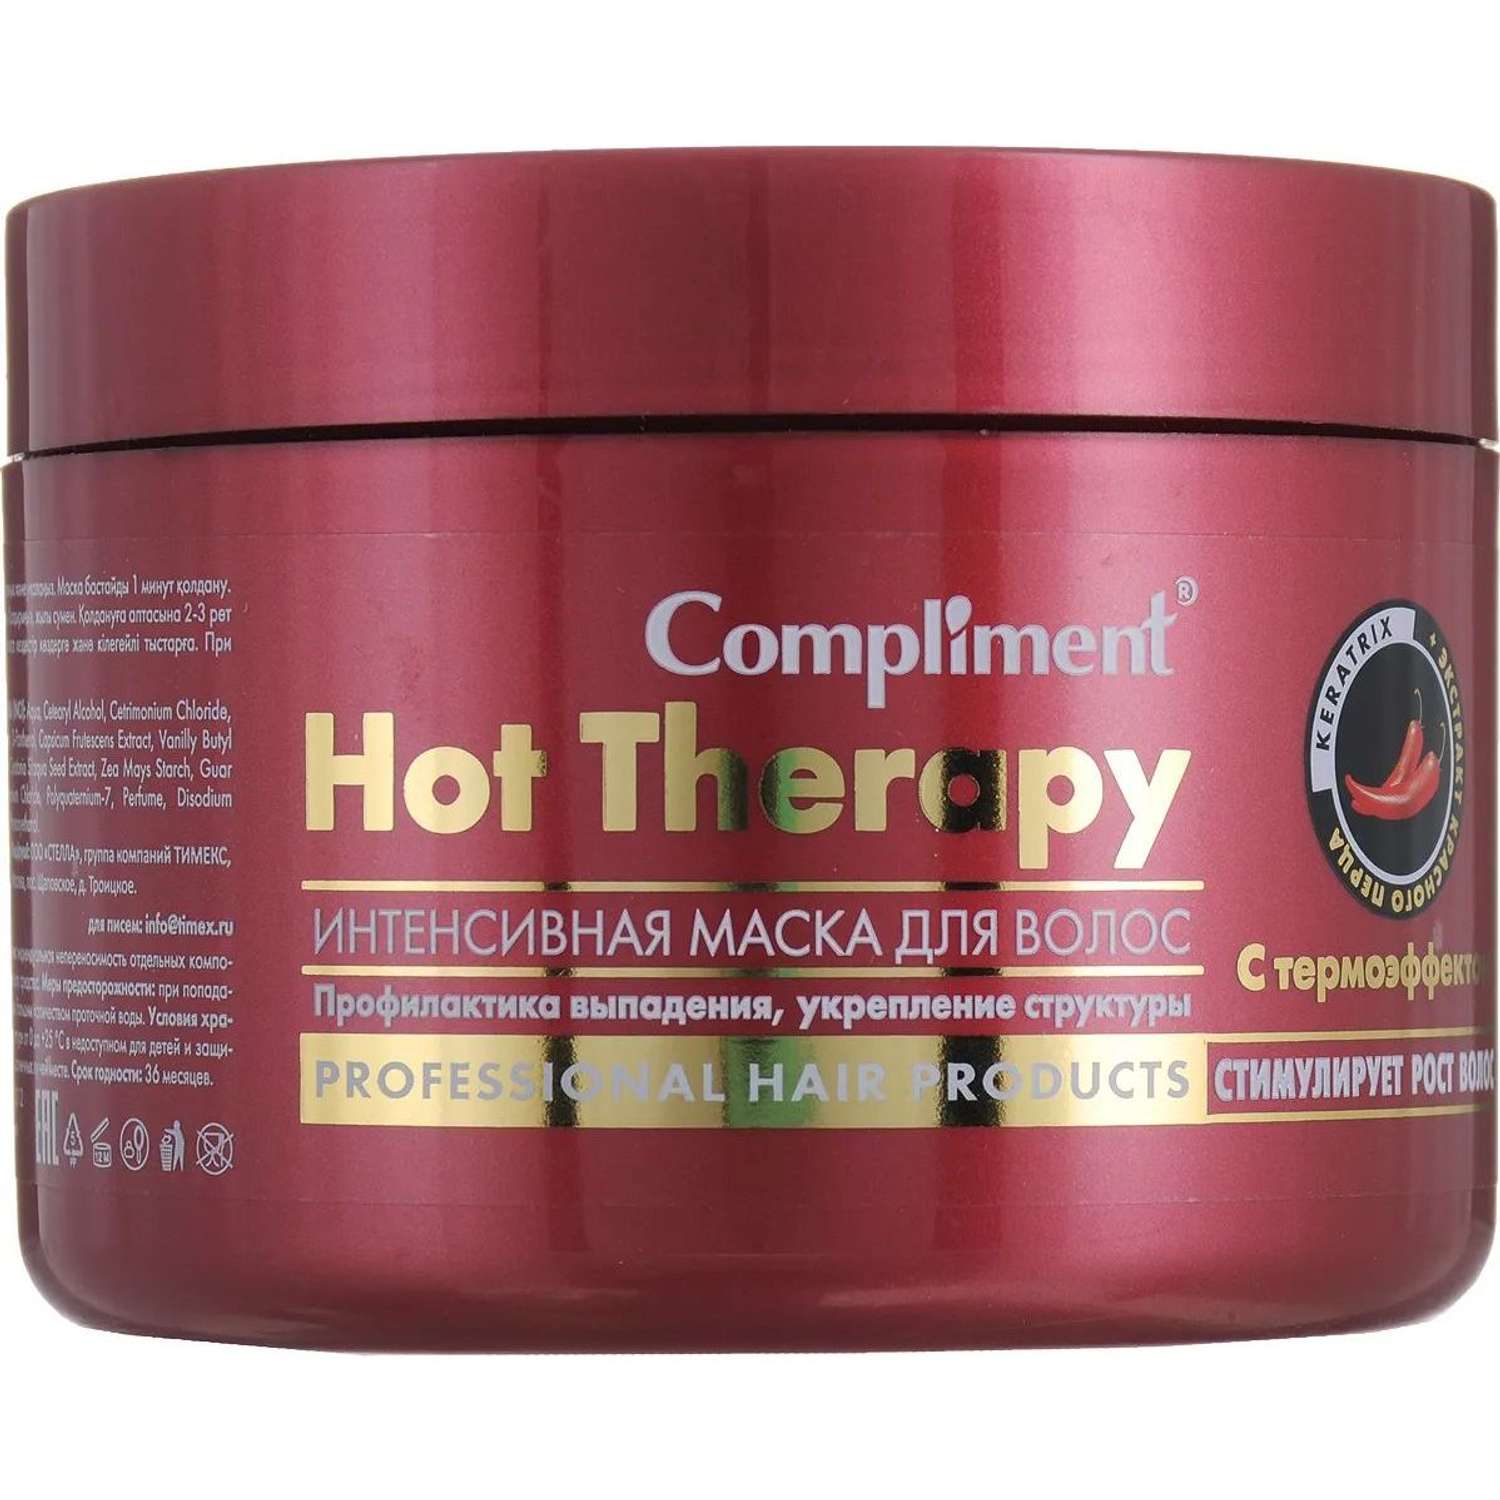 Маска Compliment Hot Therapy для волос с термоэффектом 500мл - фото 1